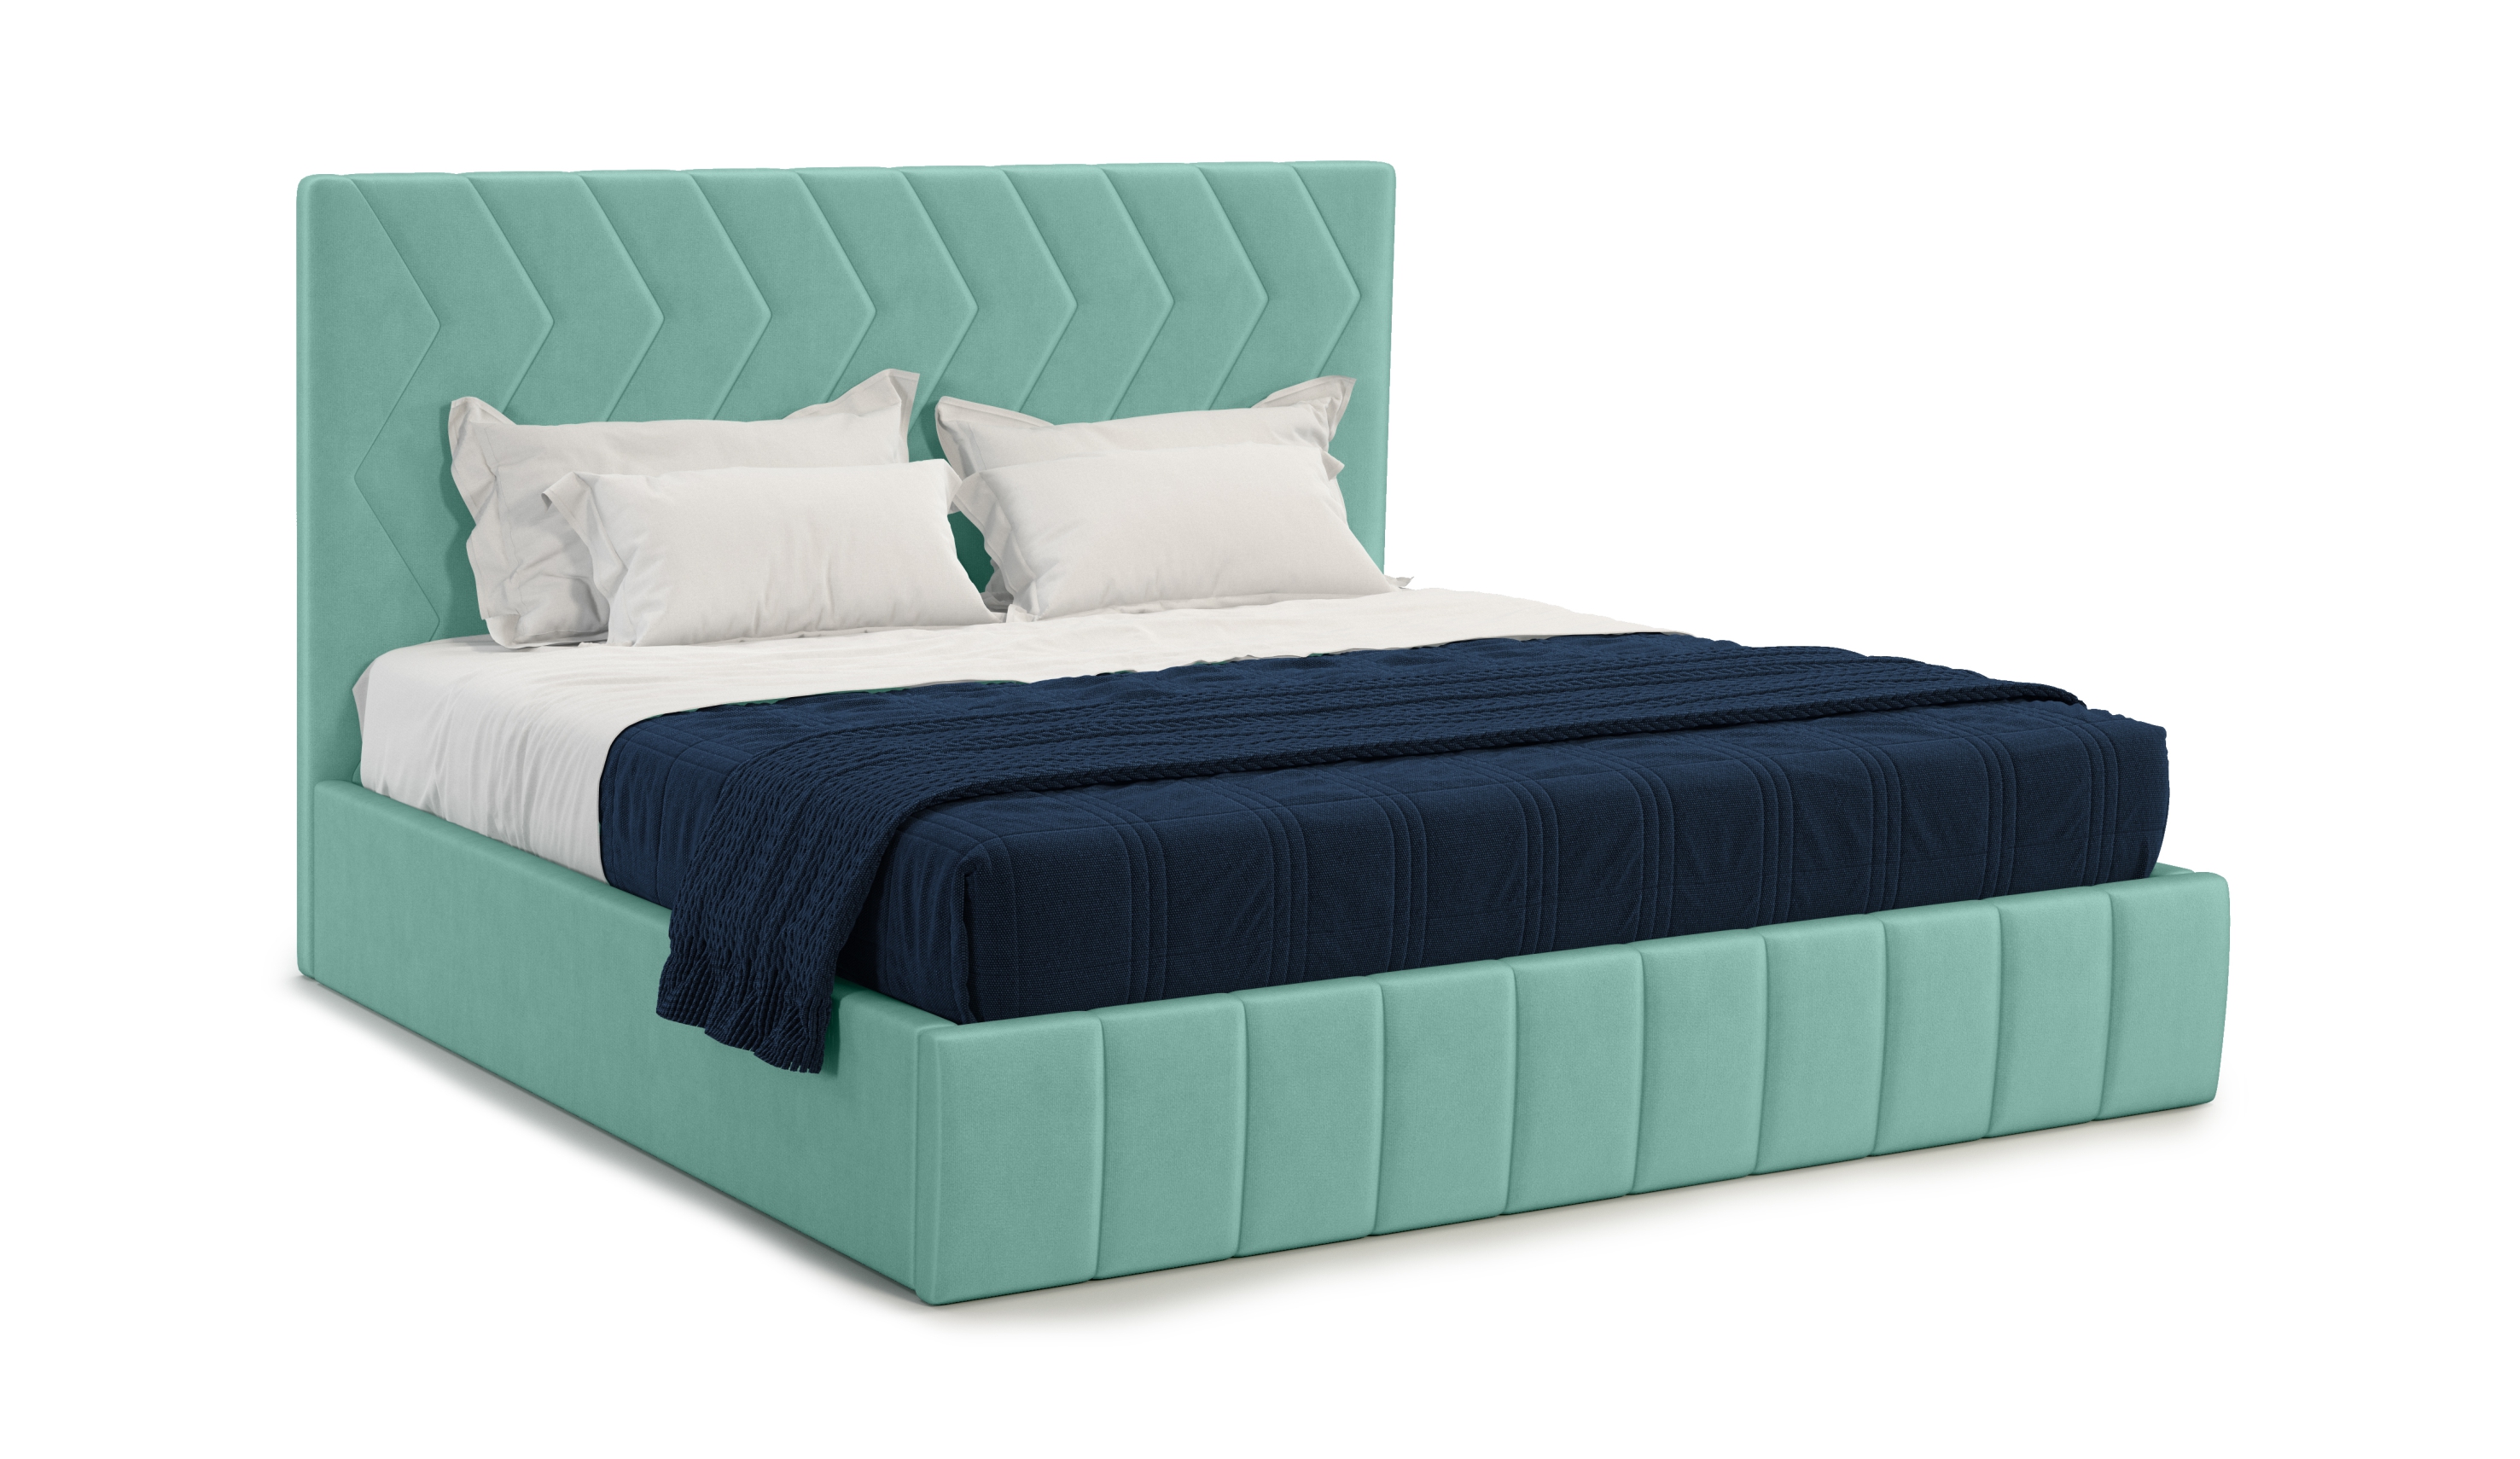 Мягкая кровать Грейс 180*200 (подъемник), цвет bingo mint - фото 2